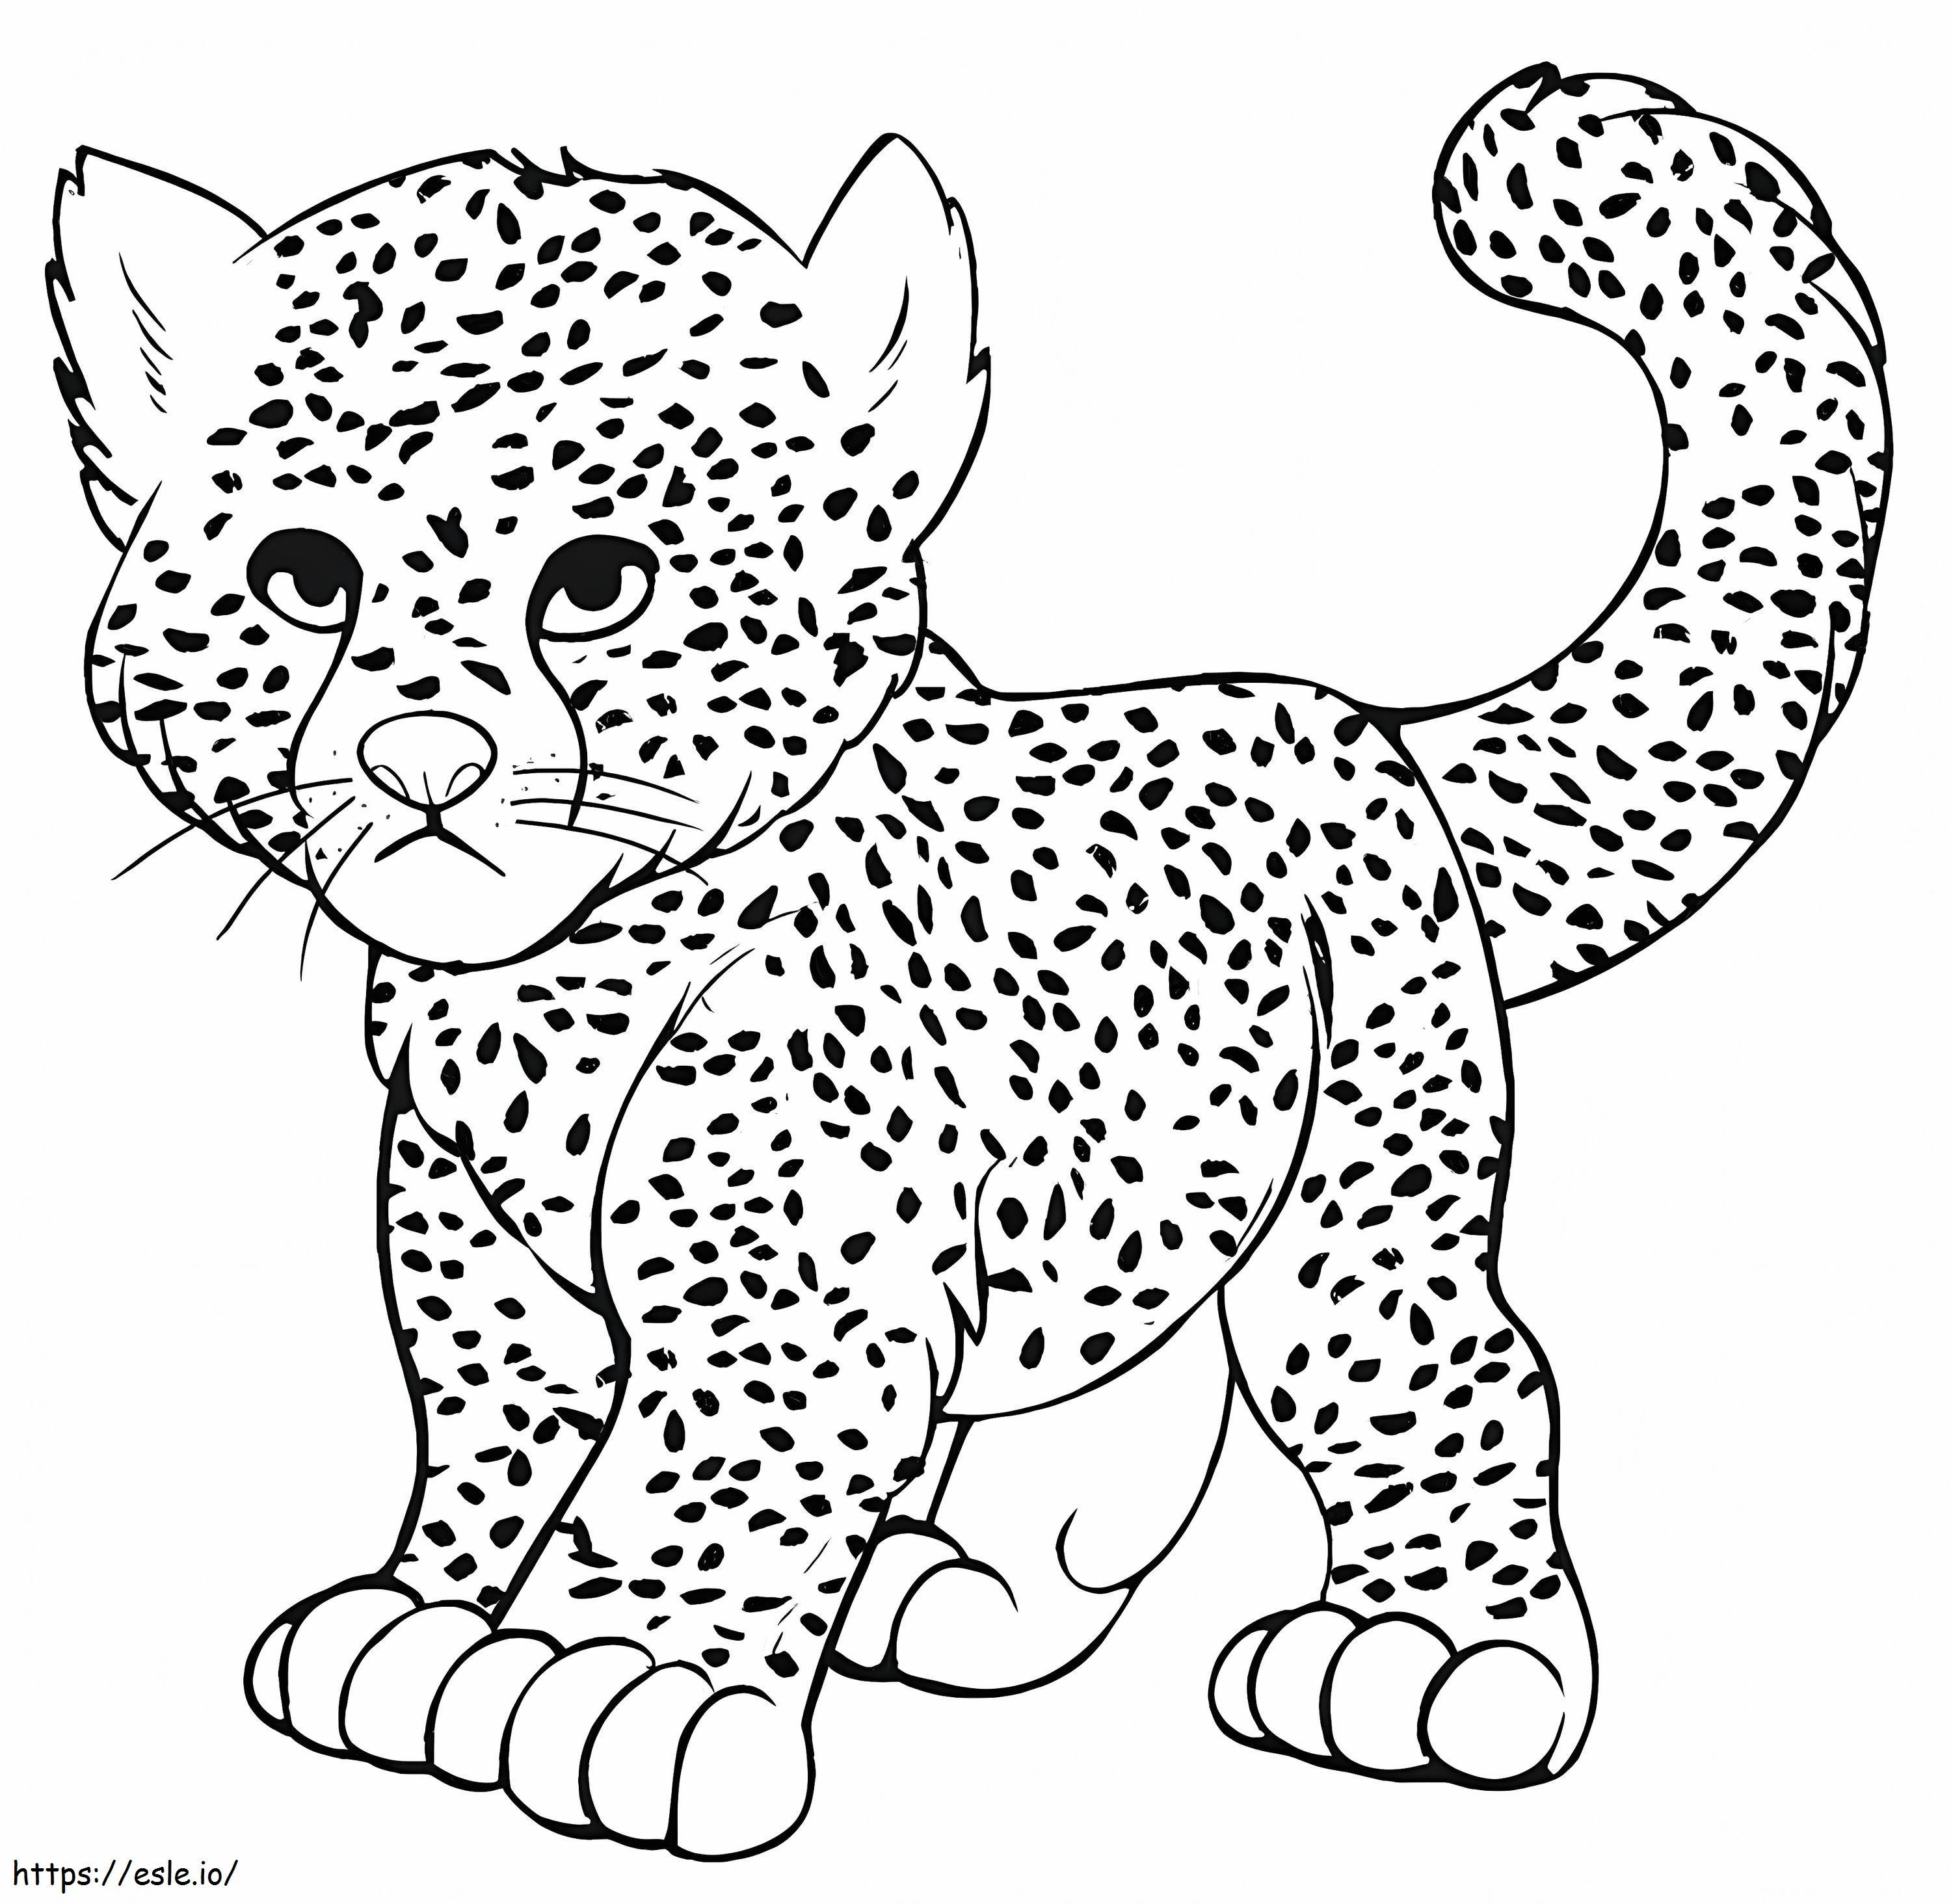 Baby Cheetah kleurplaat kleurplaat